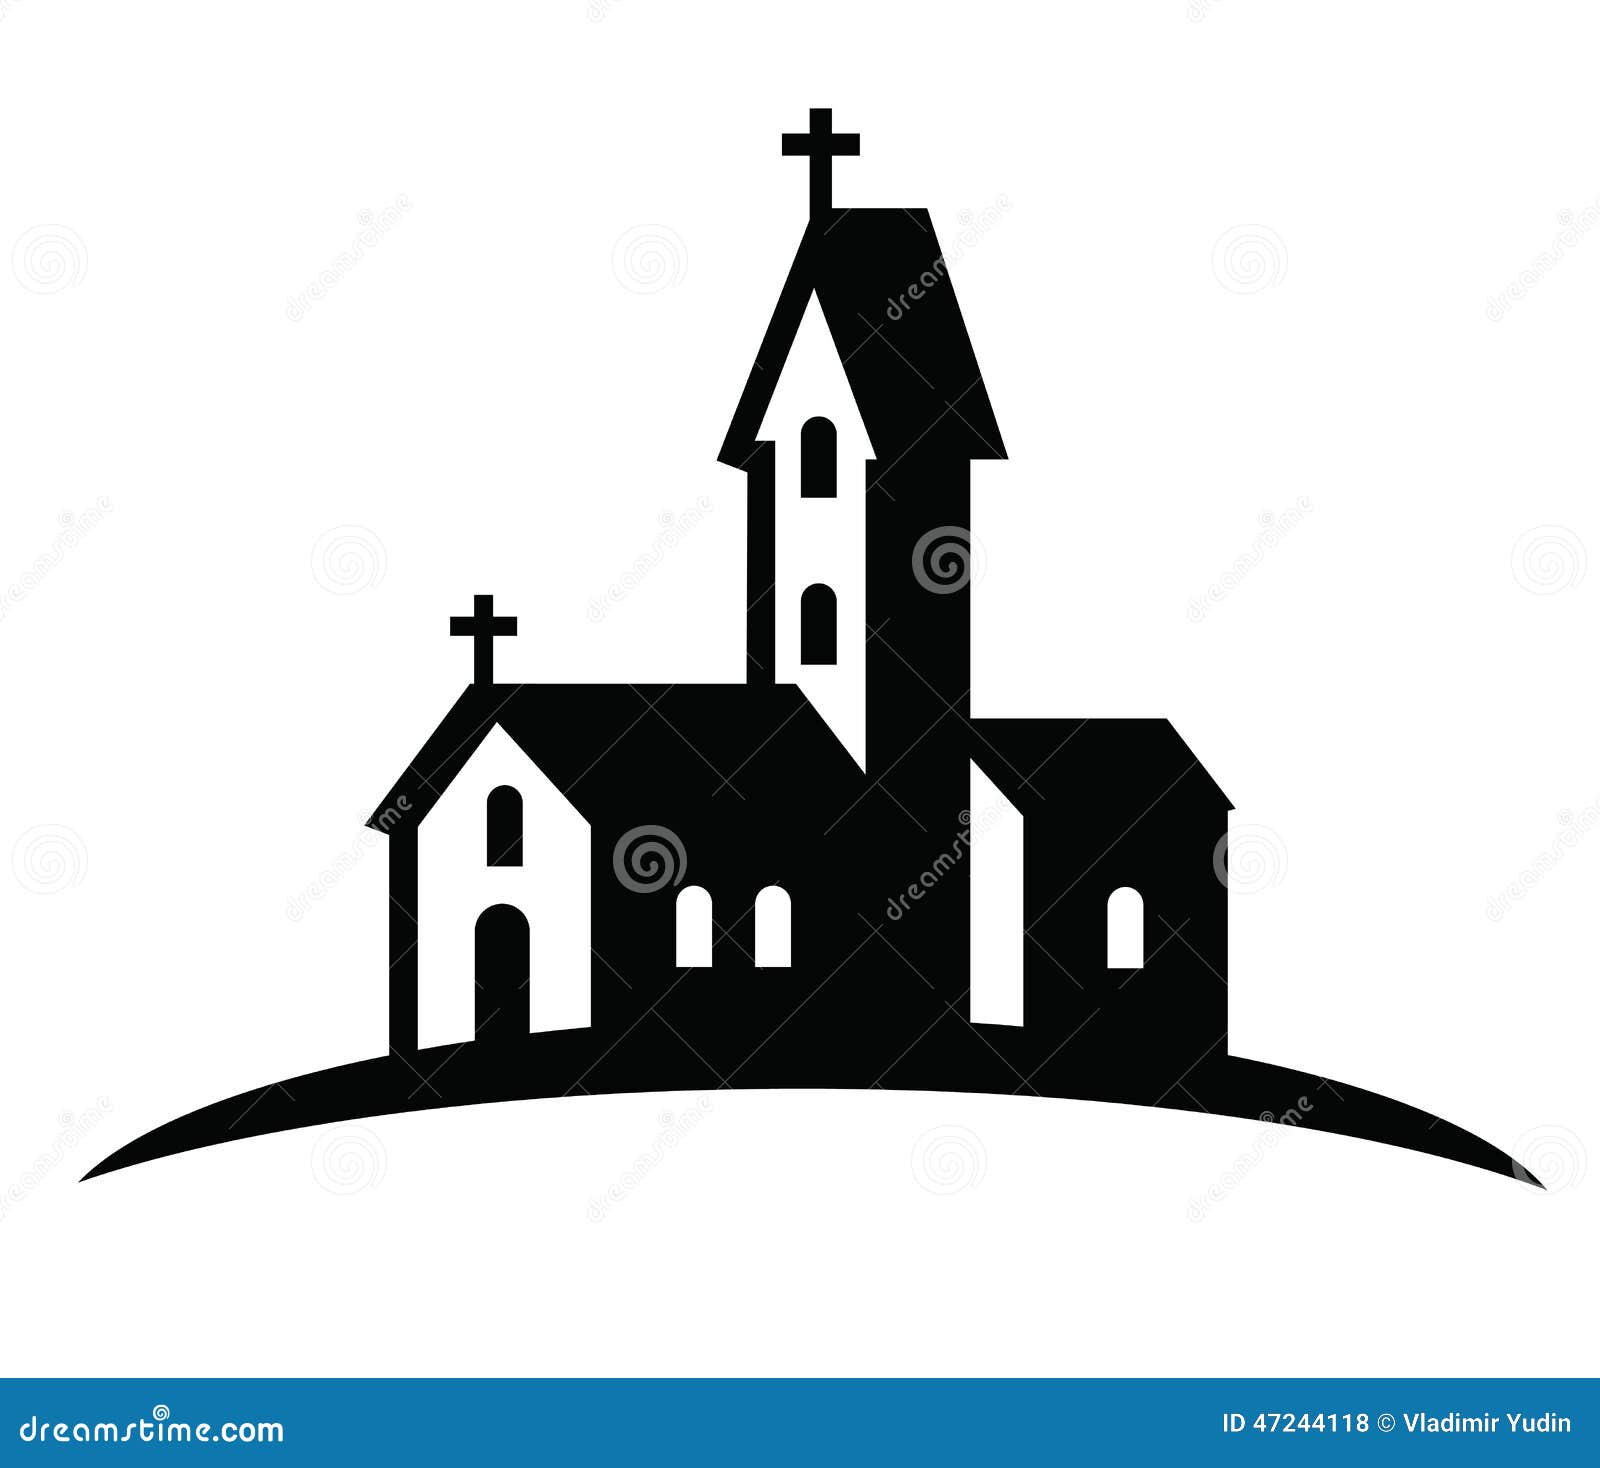 church silhouette clip art free - photo #29